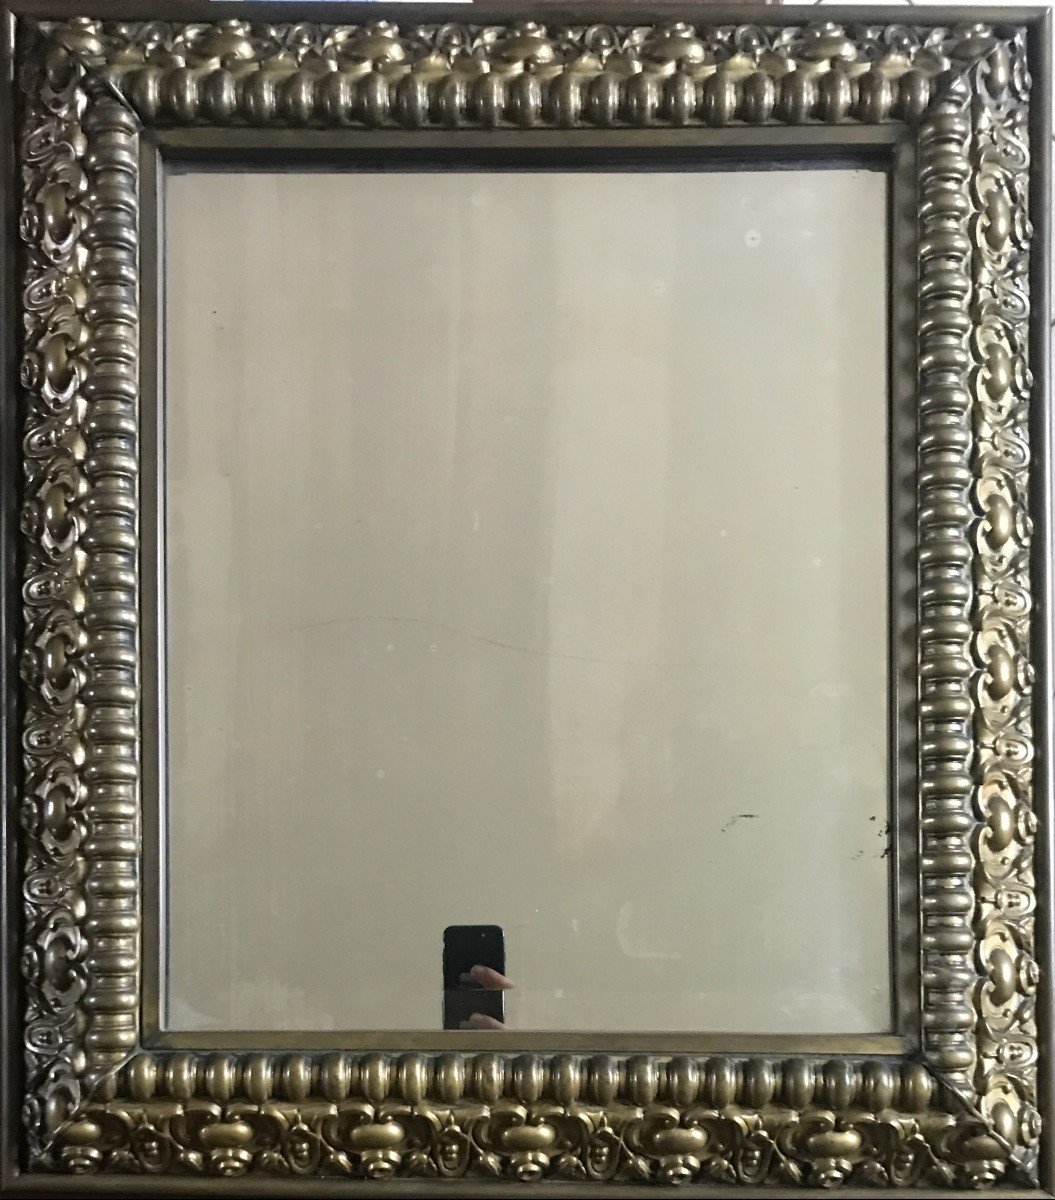 miroir en laiton repoussé de style Renaissance époque Louis Philippe 